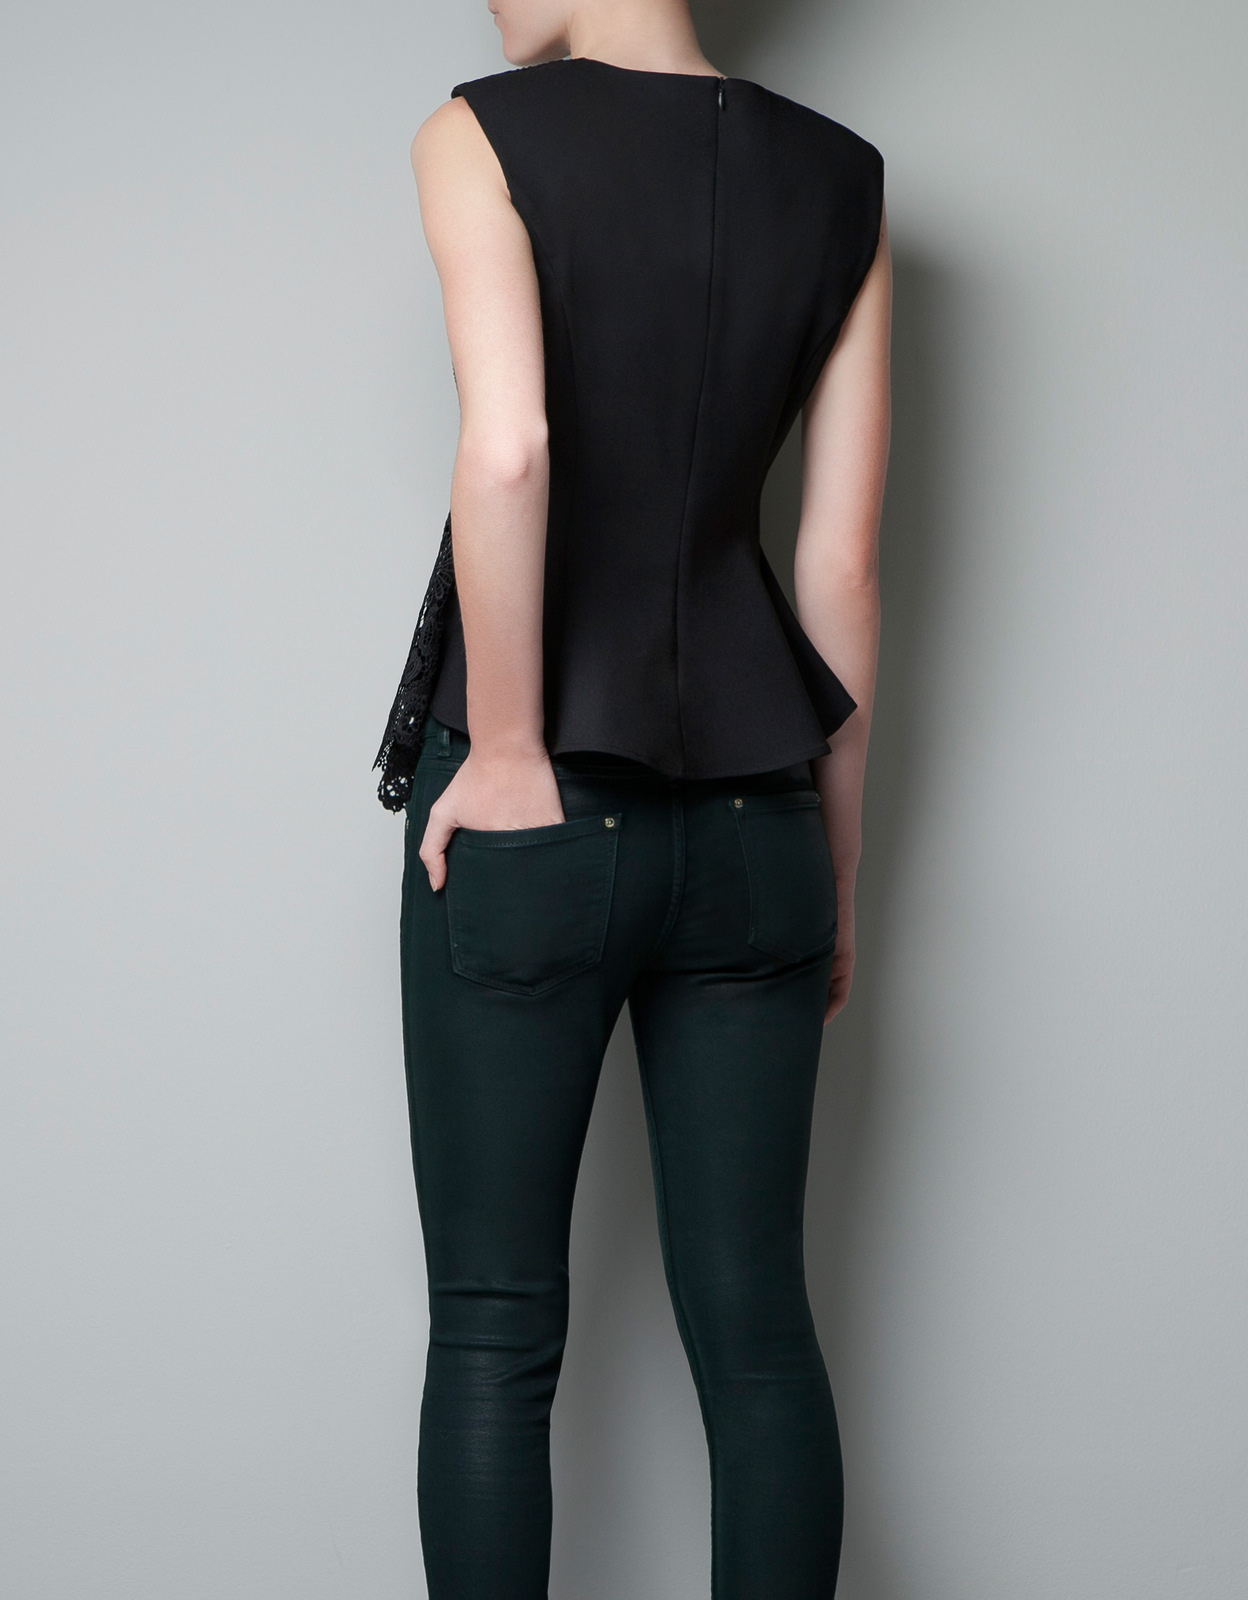 Zara csipkés fekete top 2012 fotója